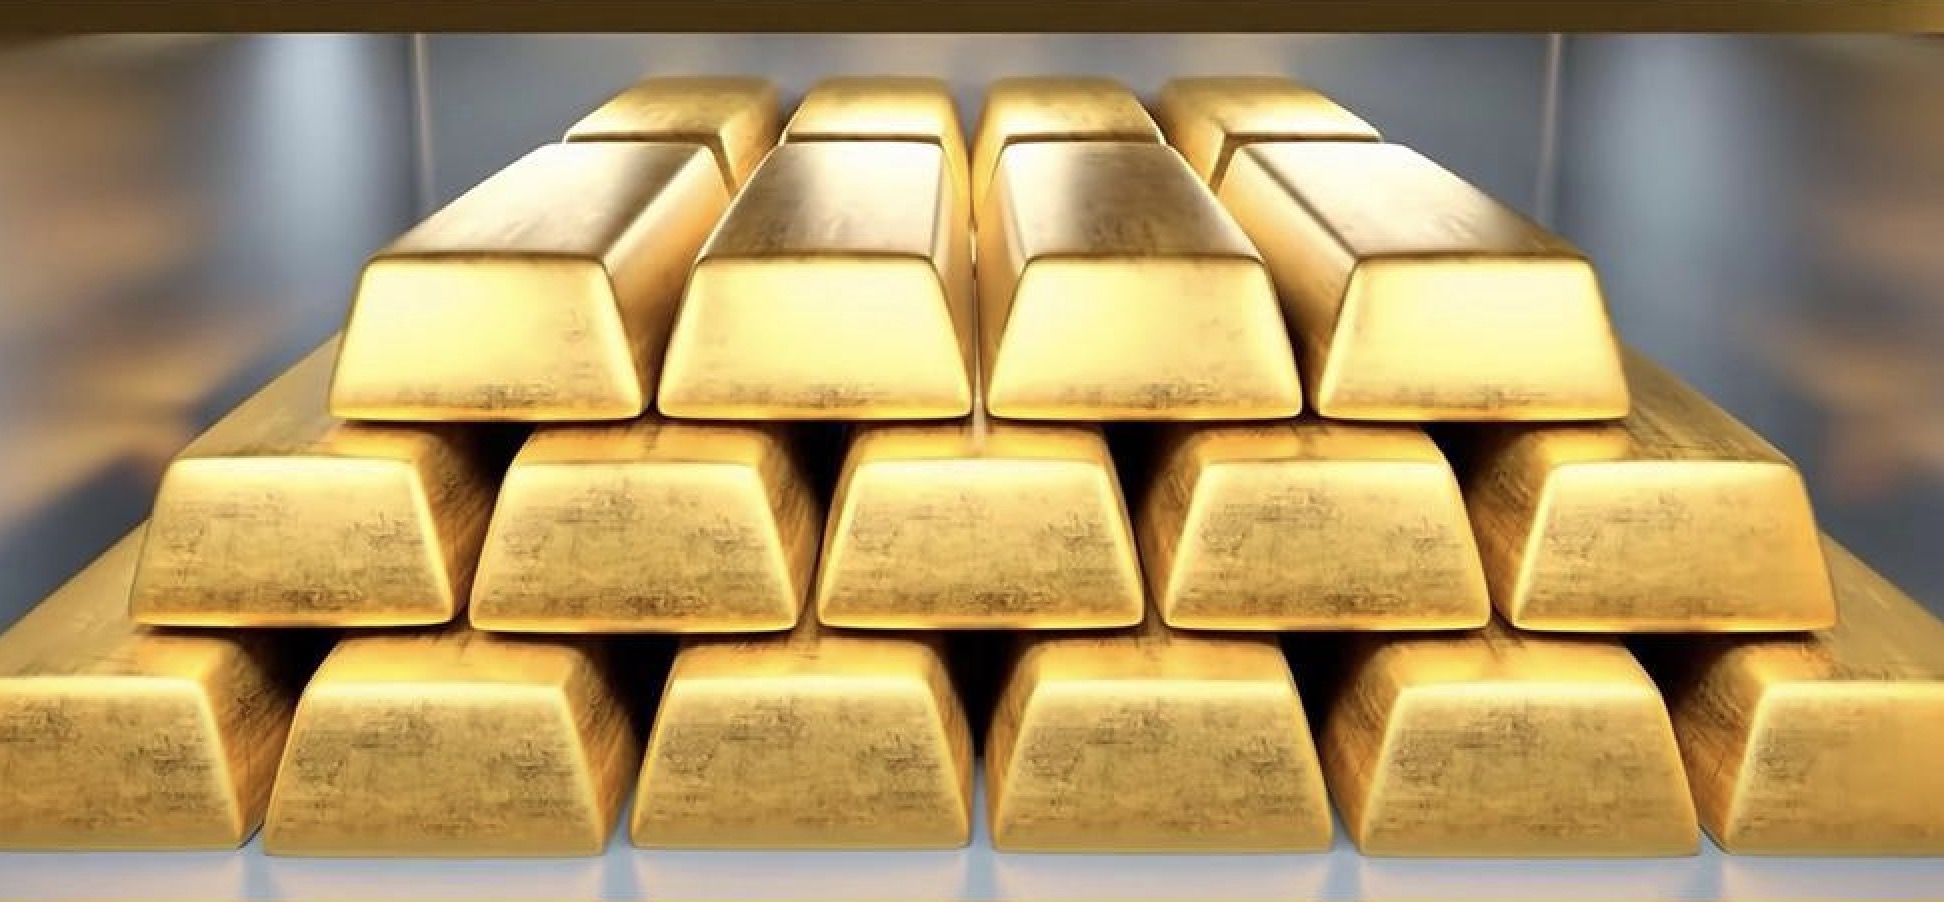 คำเตือนการซื้อขายทองคำ: การเก็งกำไรส่งผลให้ราคาทองคำปรับตัวลดลงอย่างรวดเร็ว ยังมีโอกาสที่จะแตะระดับ 2400 หรือไม่?